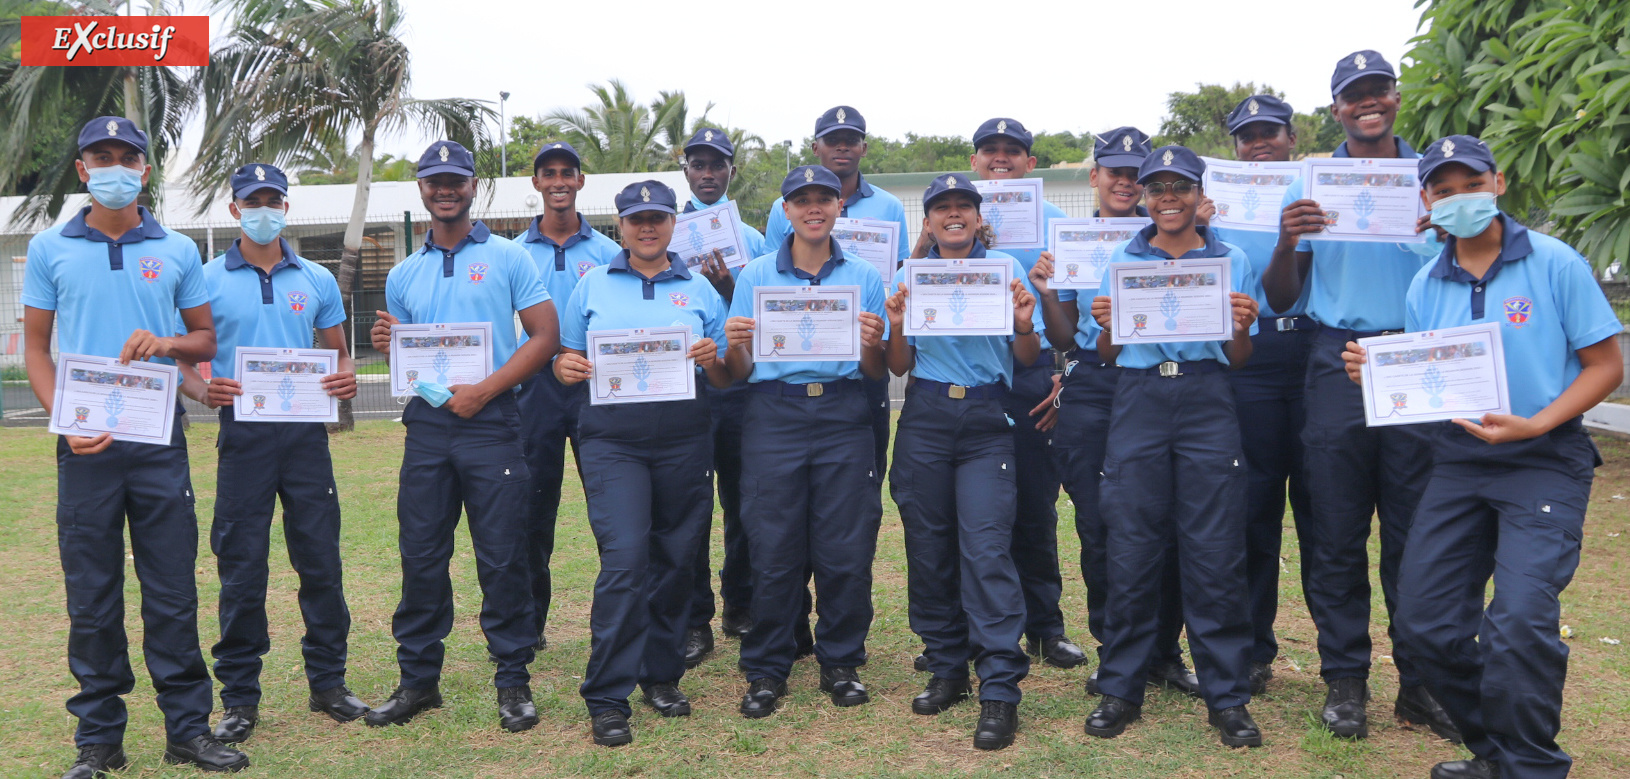 Ils et elles ont reçu avec fierté leur Brevet de Cadets de la Gendarmerie de La Réunion